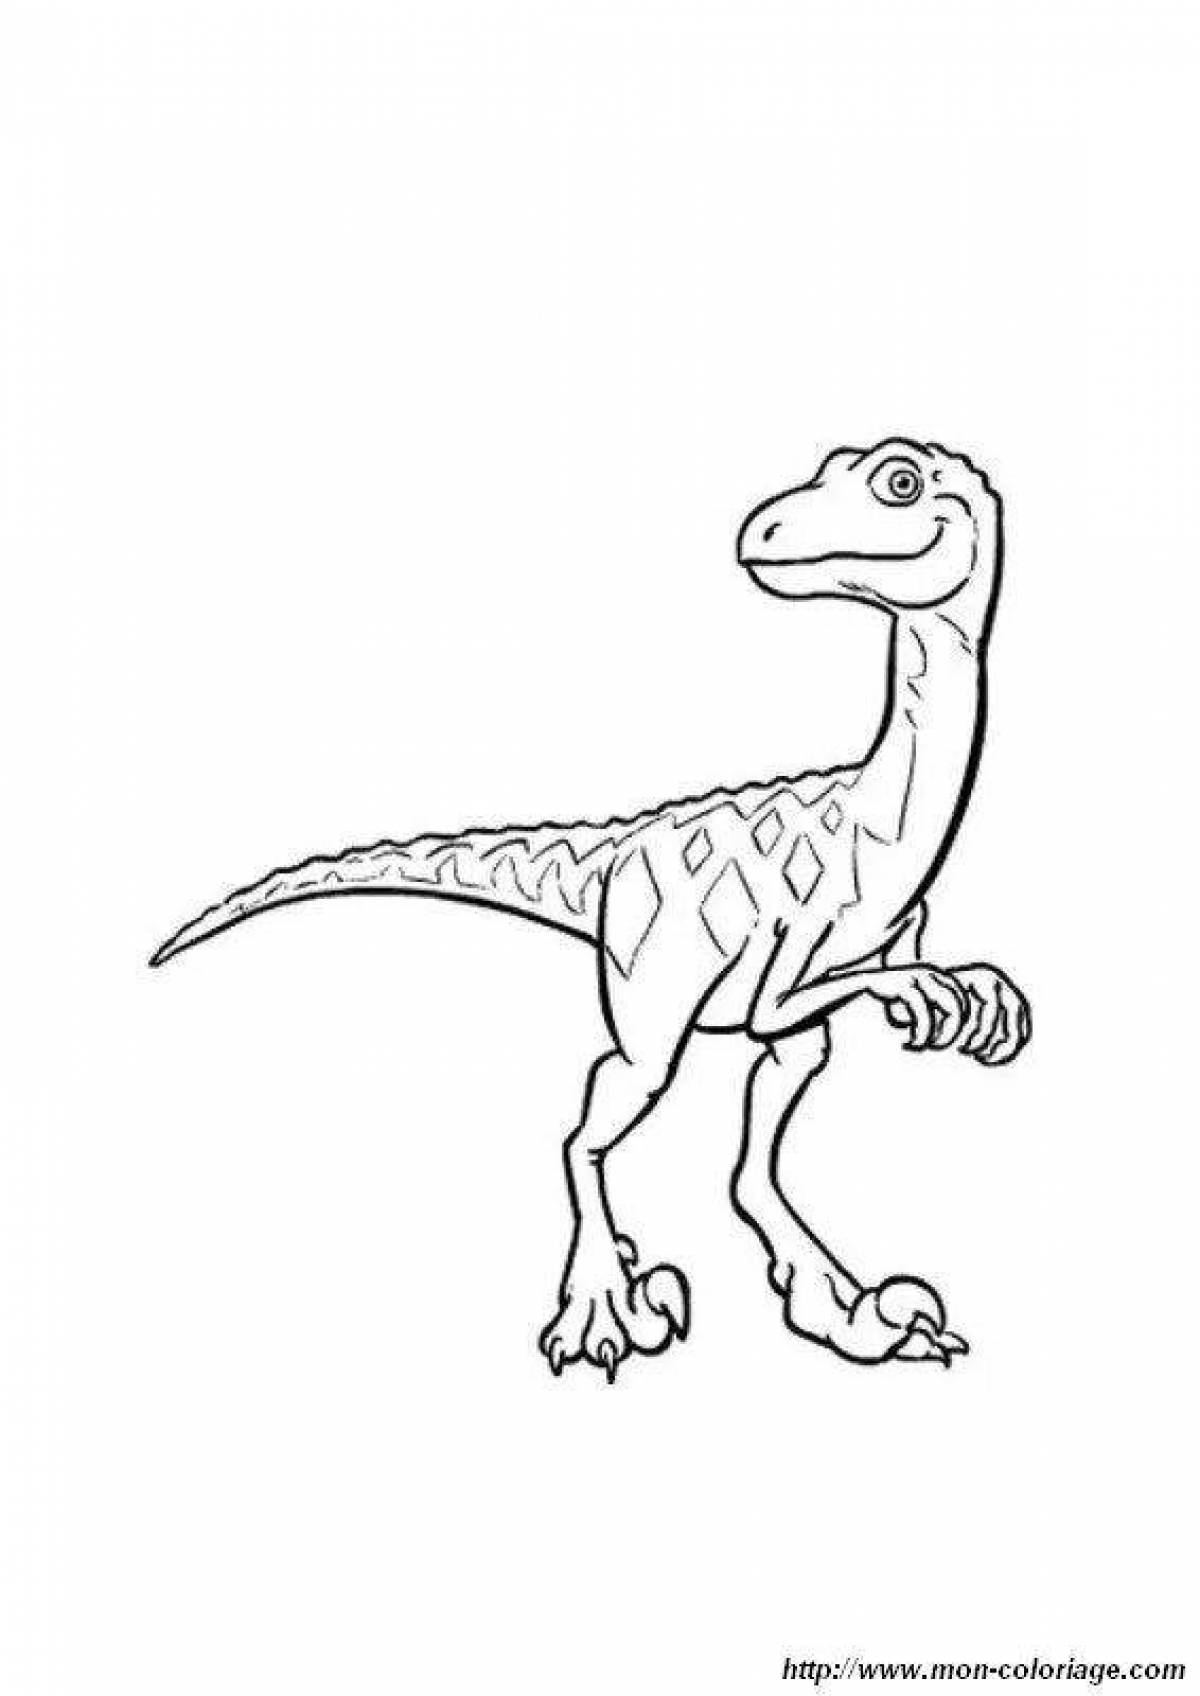 Очаровательная страница раскраски с синим динозавром